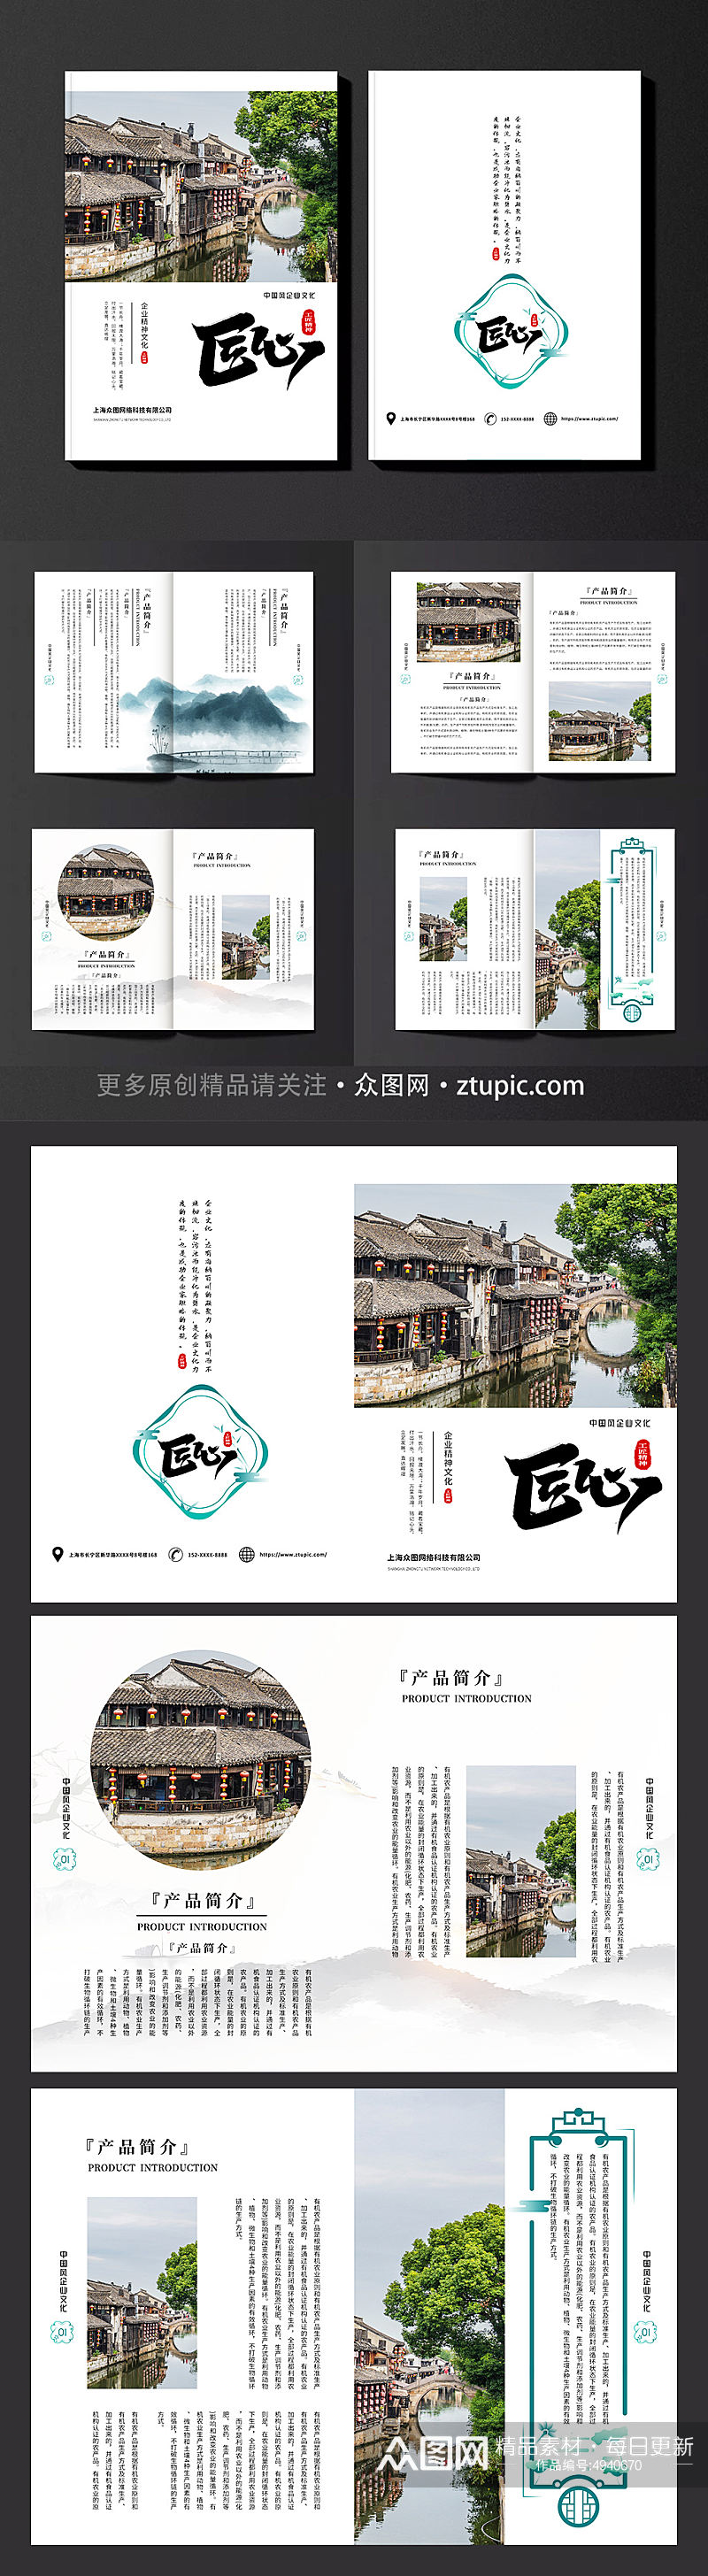 简约清新中国风水墨企业宣传通用版画册素材